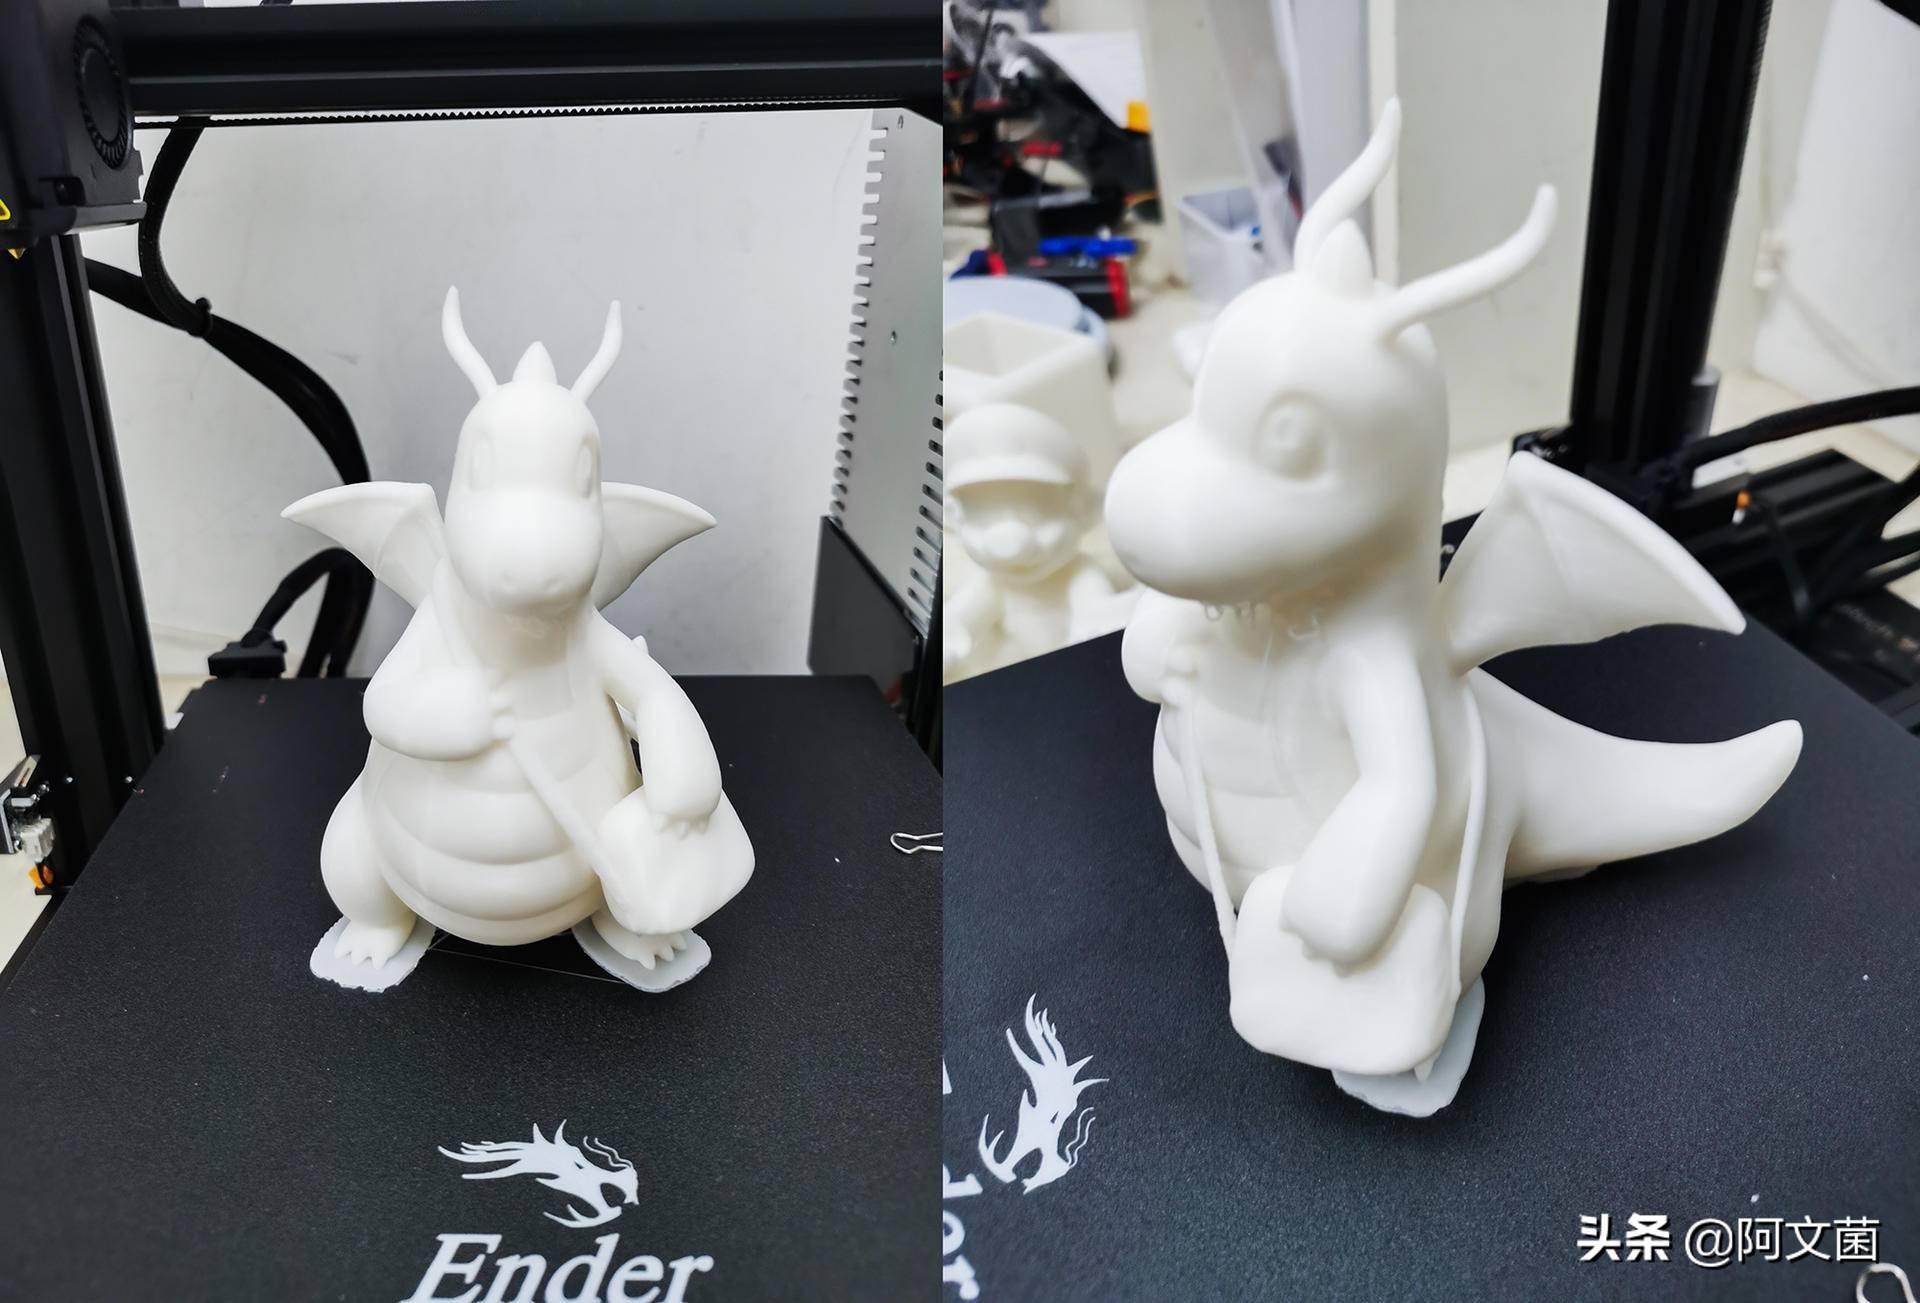 零基础玩转3D打印机，创想三维ender-3 使用体验  第107张